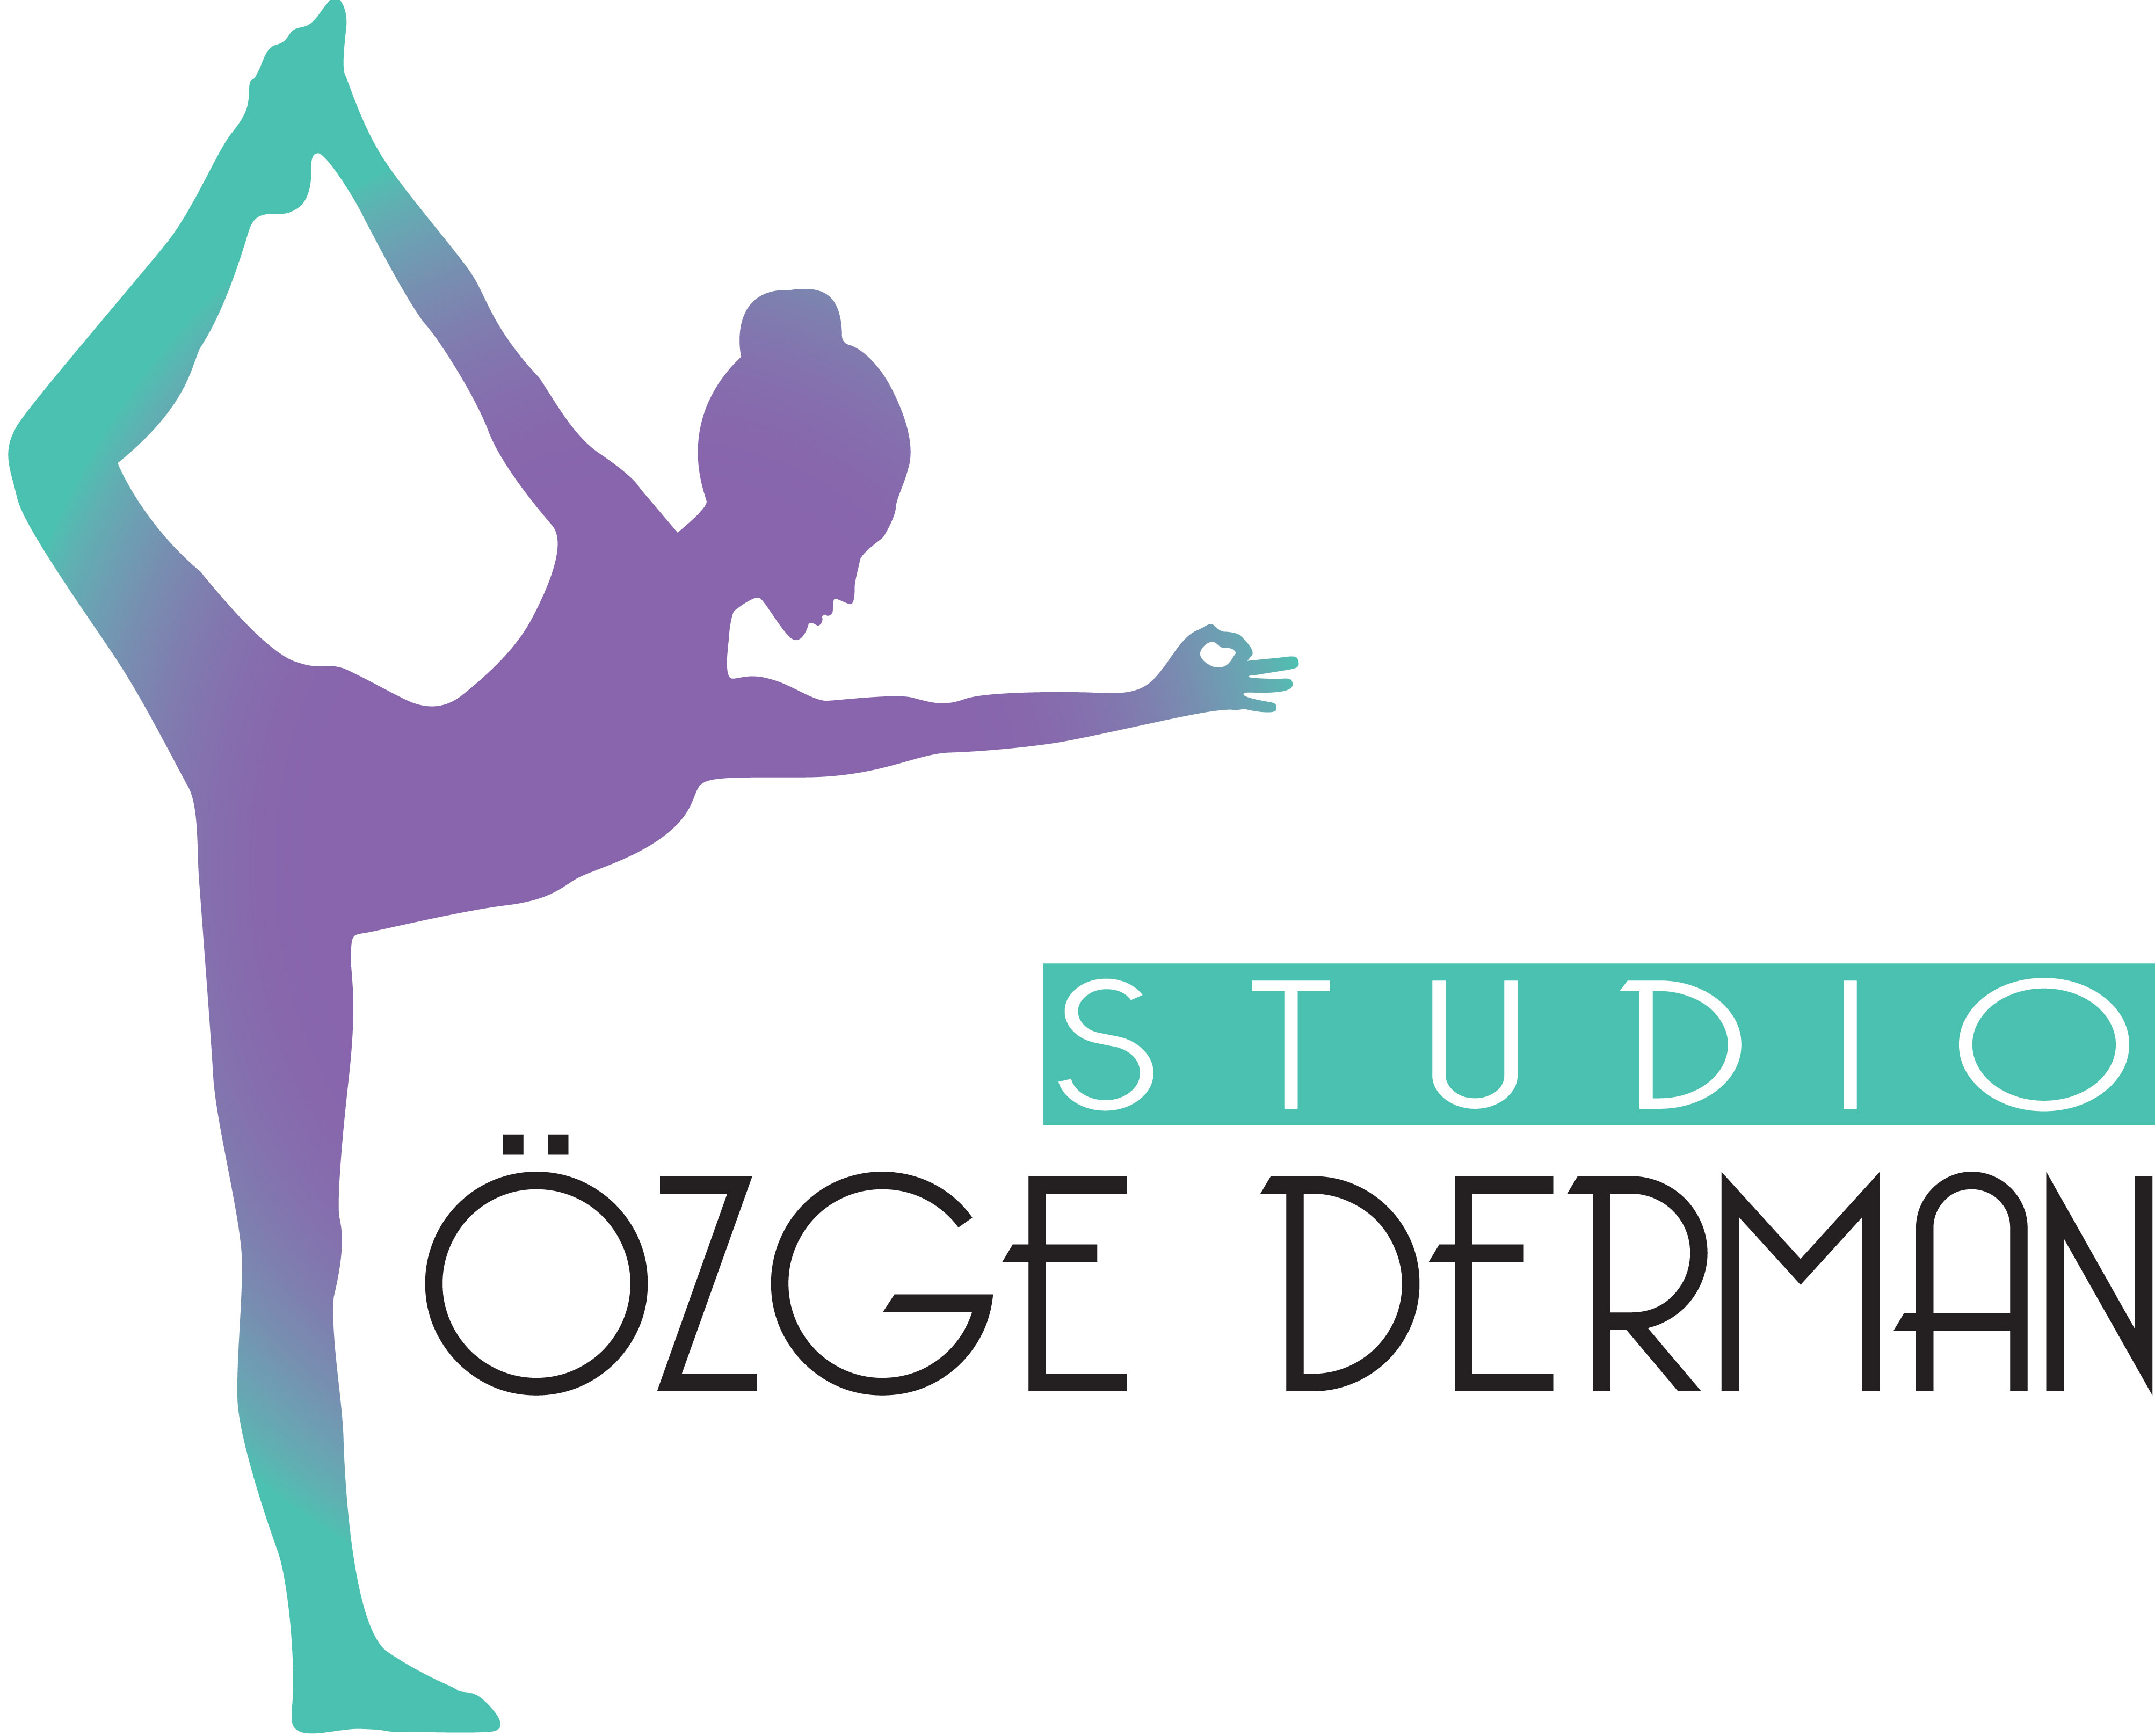 Özge Derman Studio<br /><br />Pilates,Yoga, Dance, Barre, Floor Barre